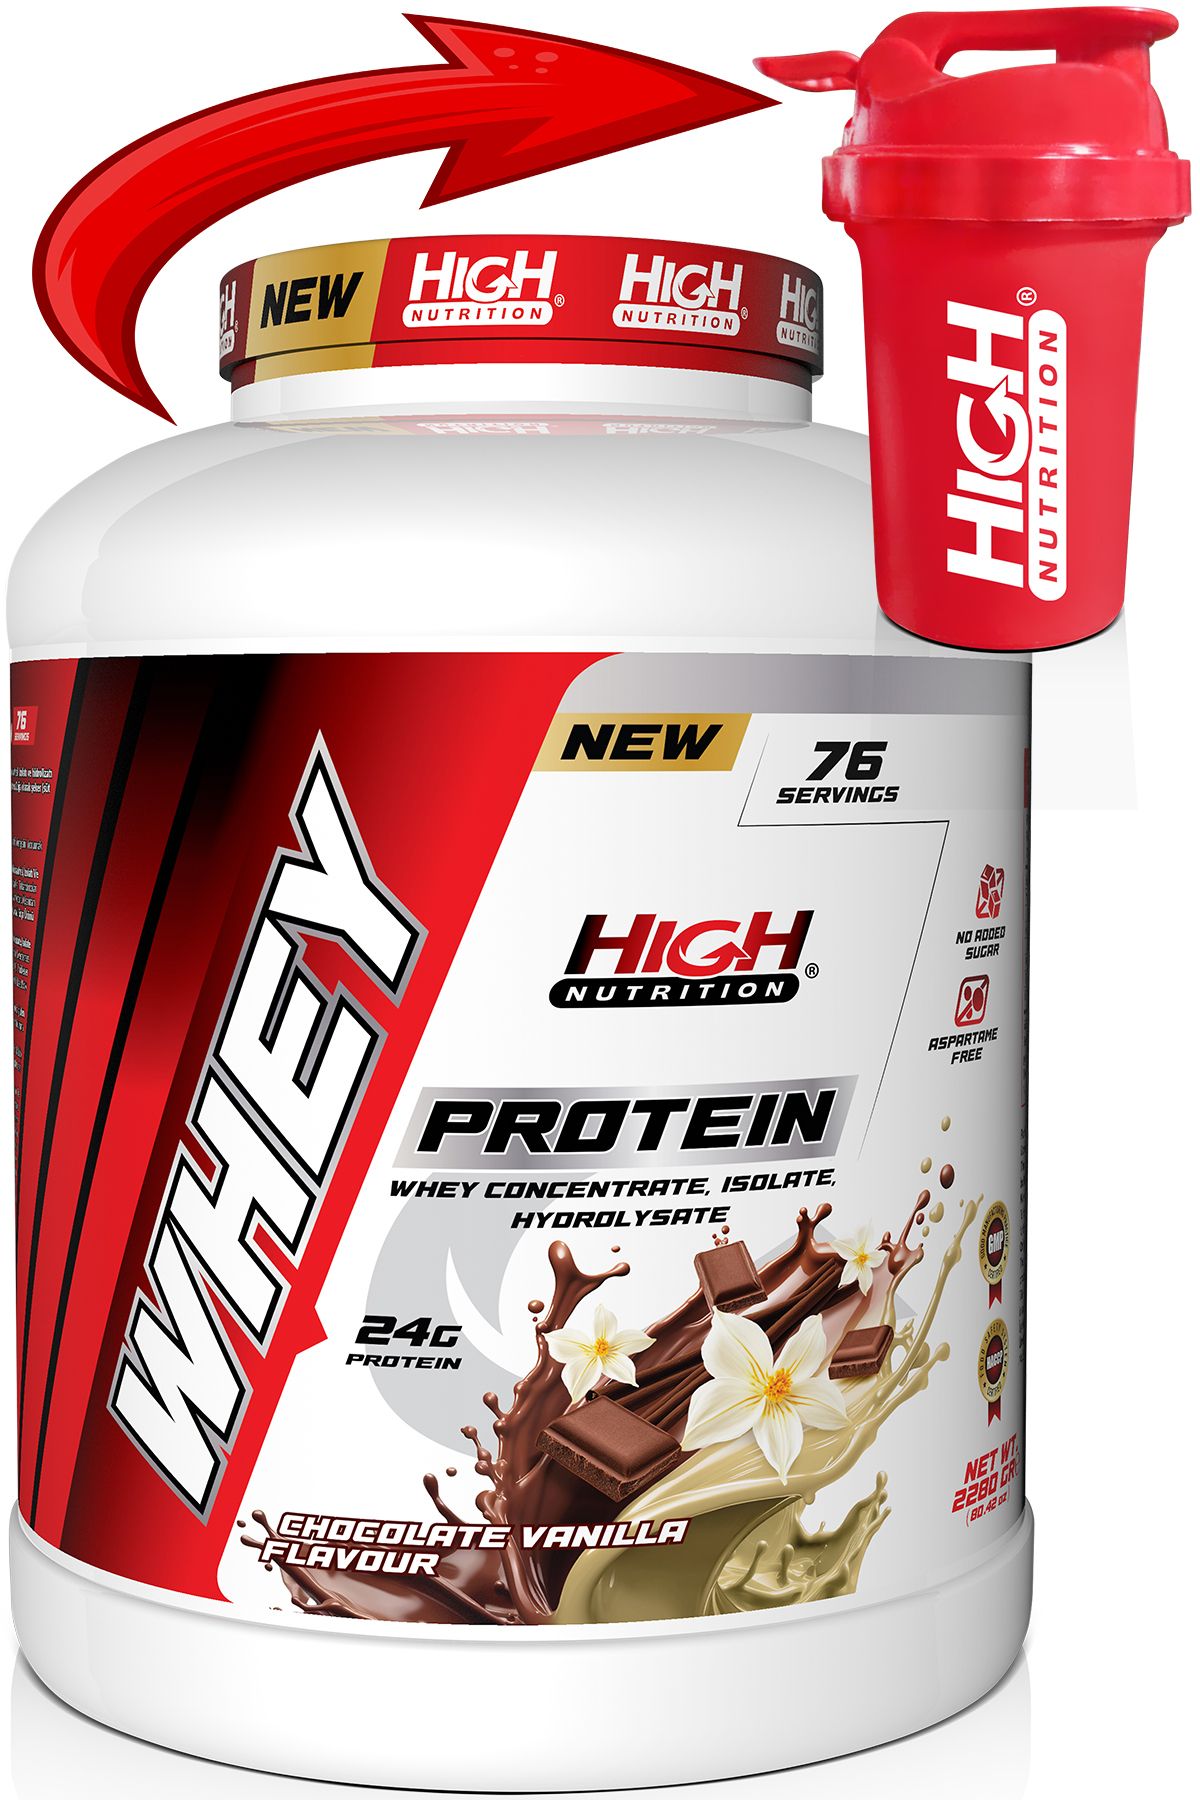 High Nutrition Protein Tozu 2280 Gr Çikolata Vanilya Aromalı Whey Protein 24 Gram Protein 76 Servis